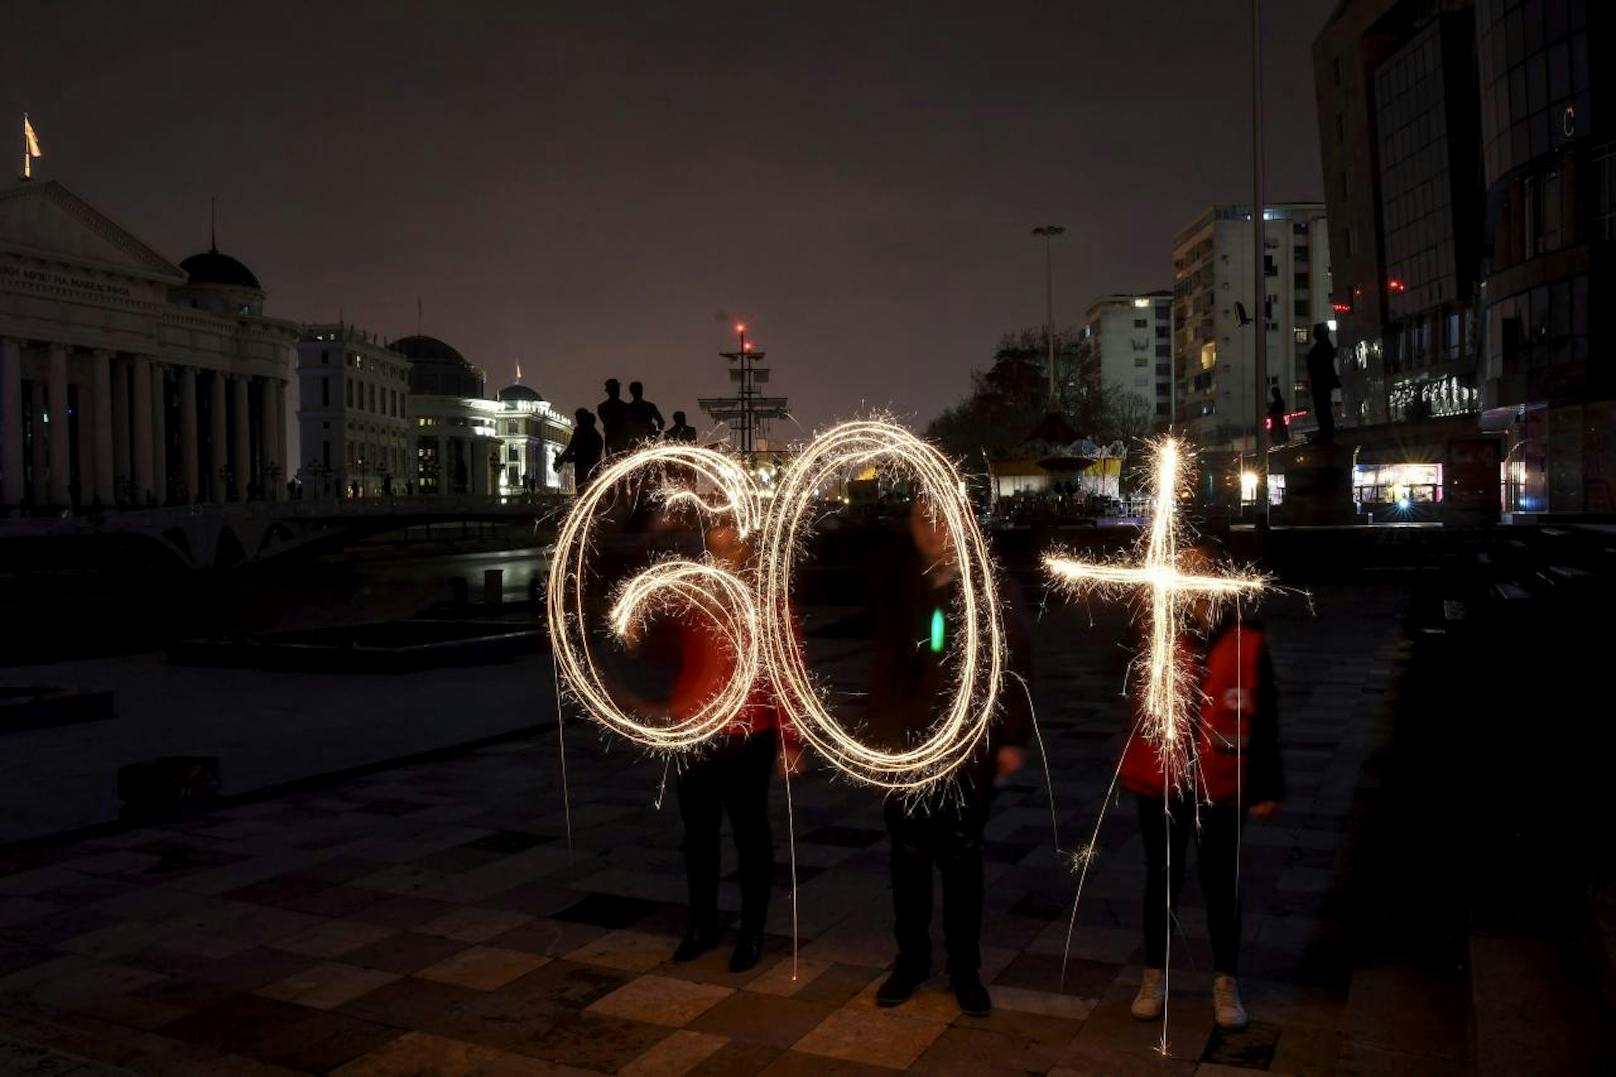 Tausende Menschen formten weltweit mit Kerzen die Inschrift "60+" um an die Gefahren des Klimawandels zu erinnern